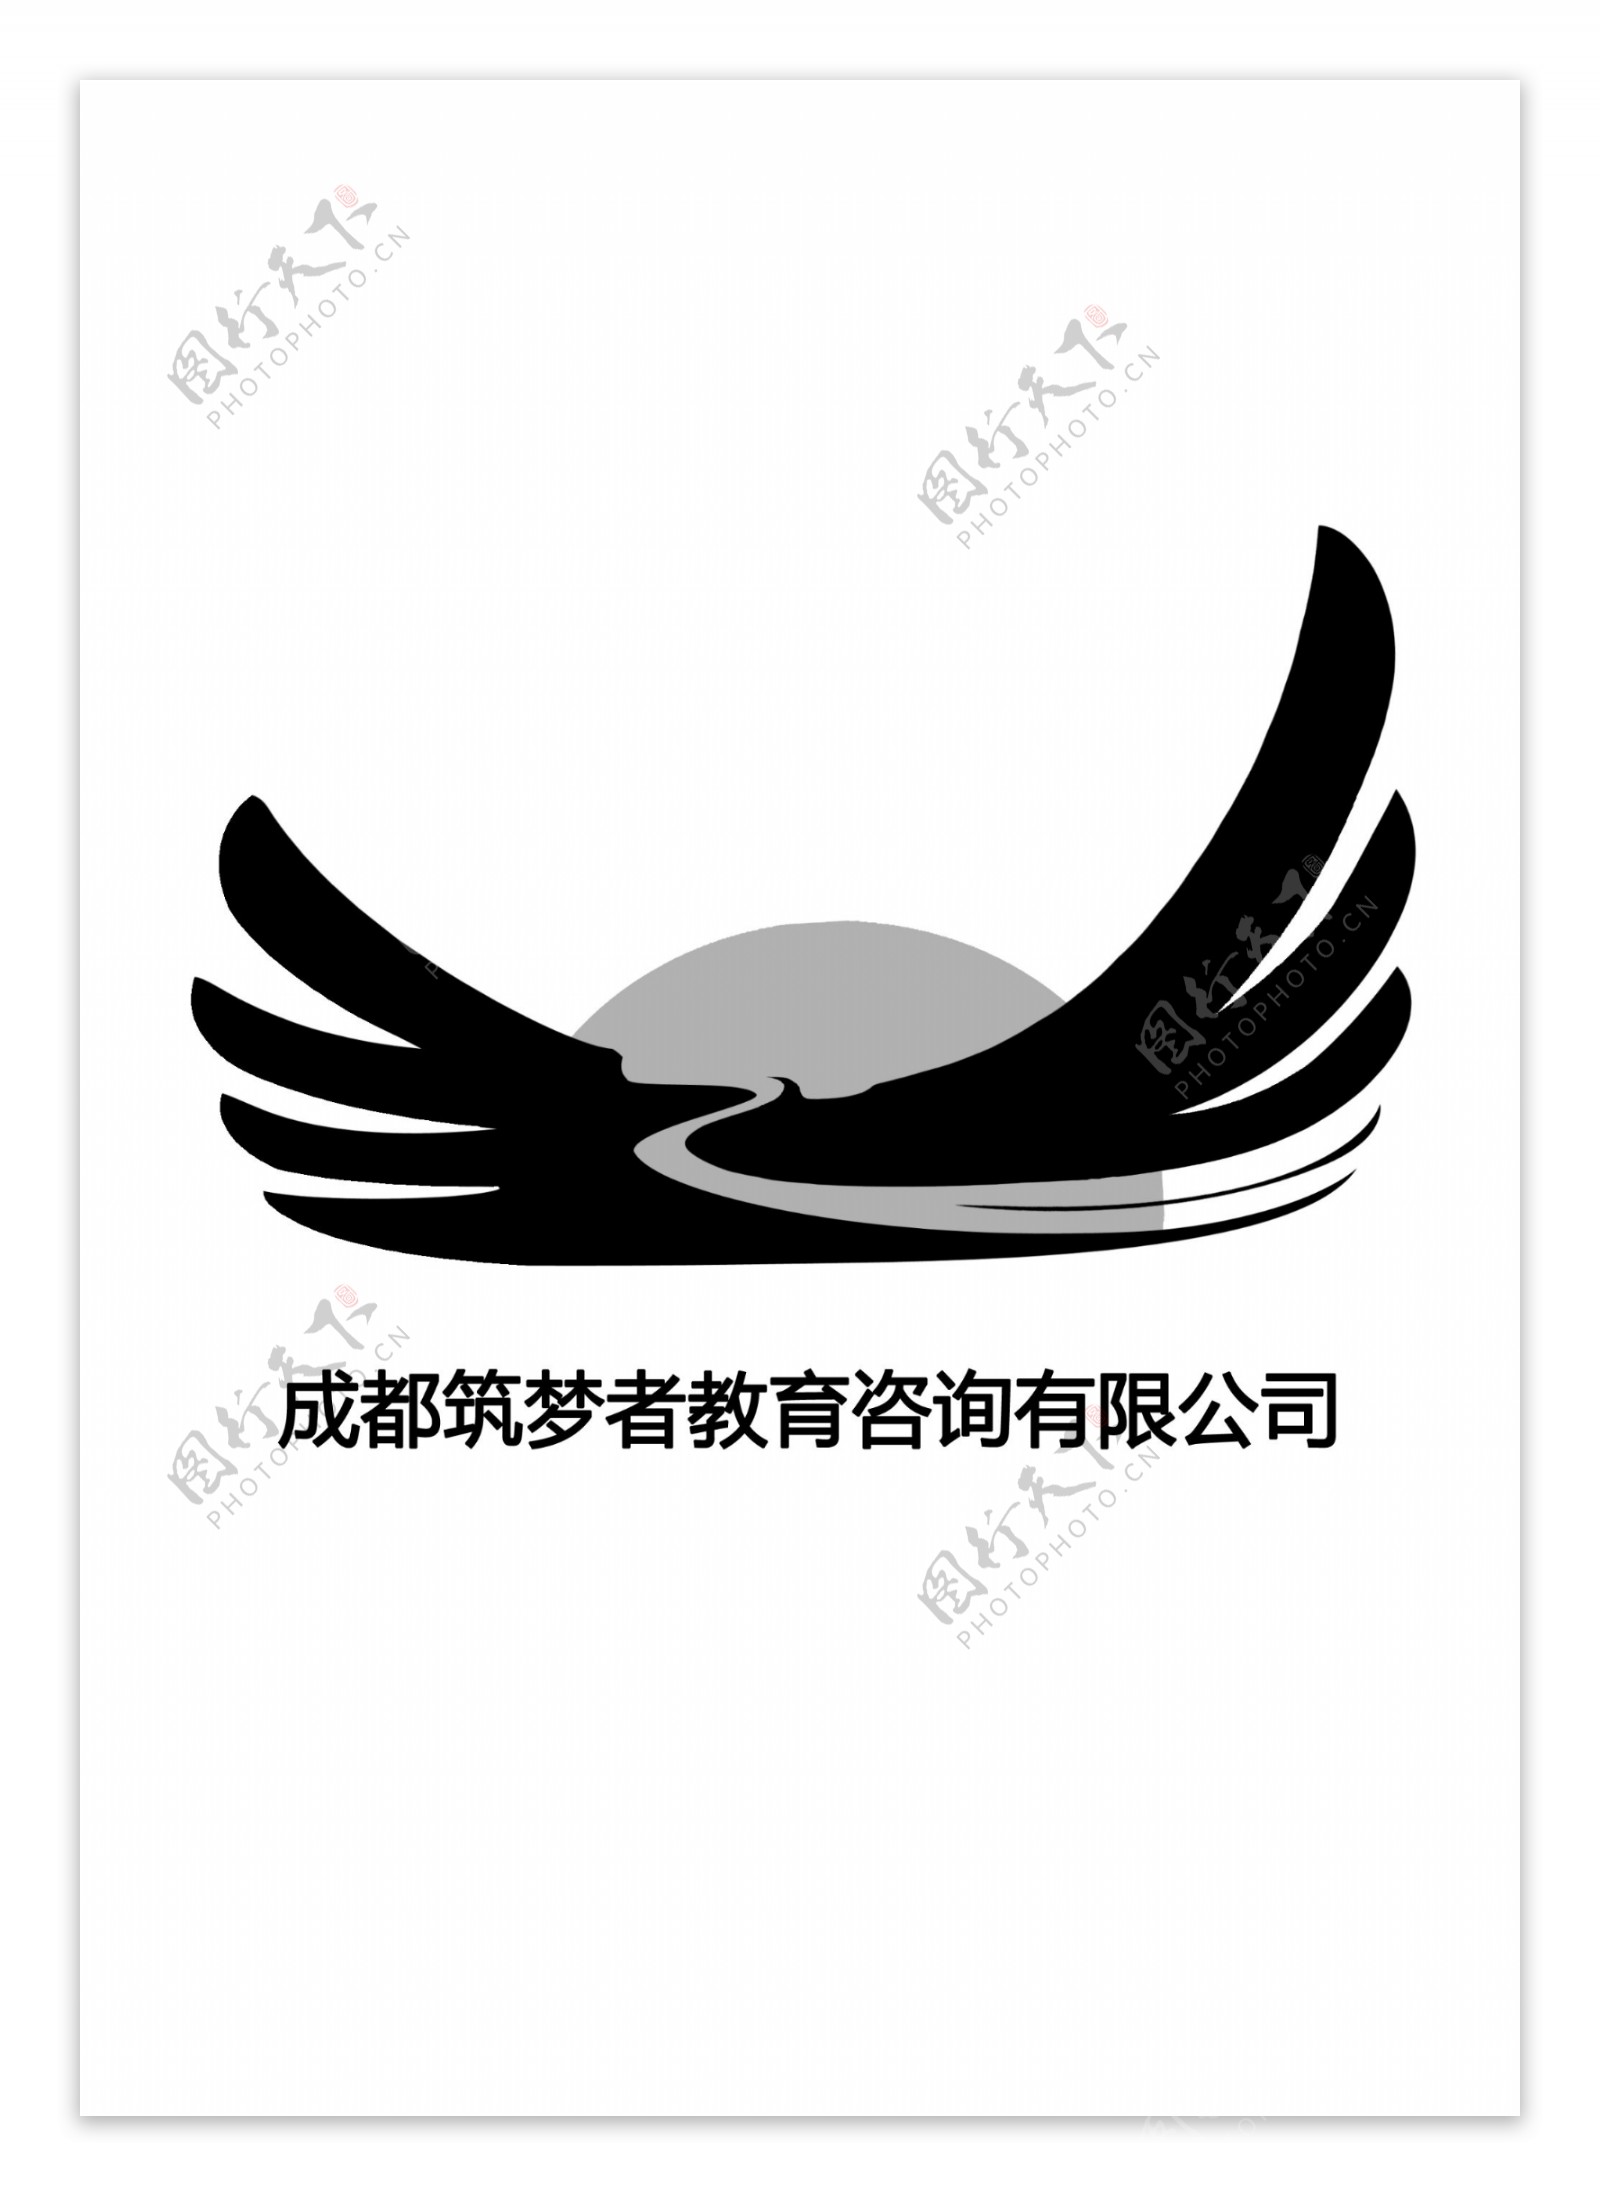 筑梦者教育咨询公司logo标志